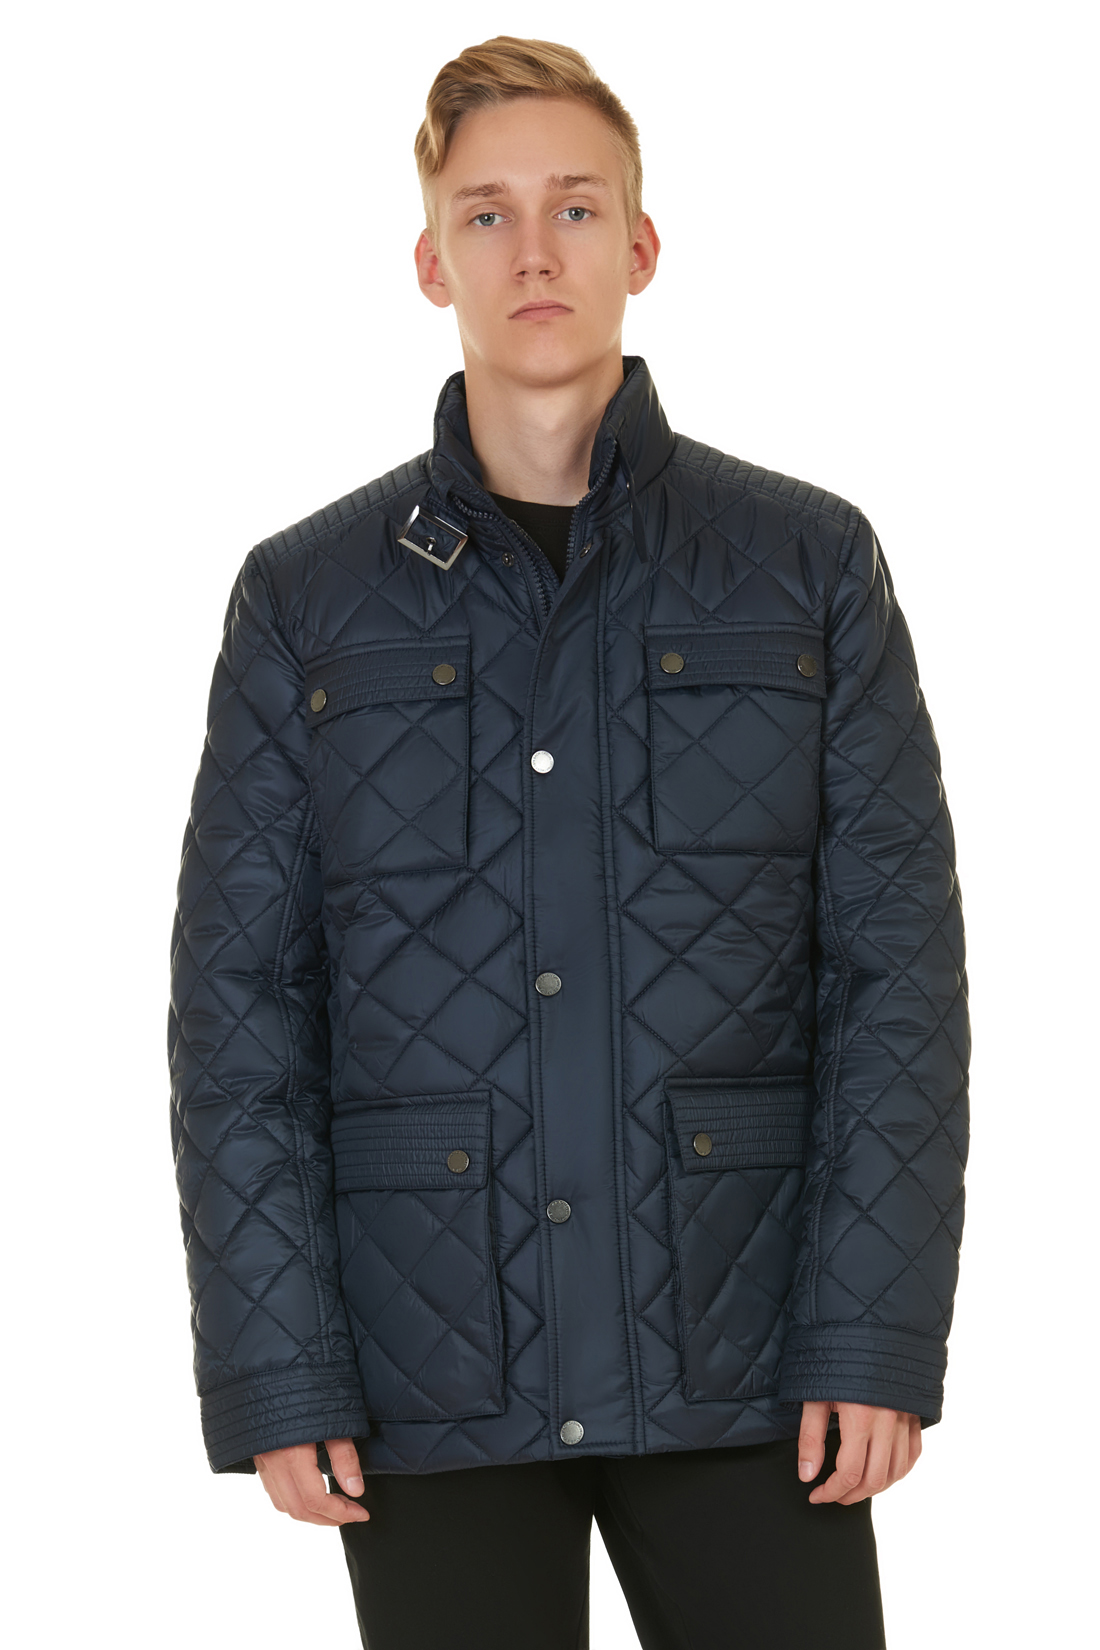 Стёганая куртка с металлической фурнитурой (арт. baon B537550), размер XXL, цвет синий Стёганая куртка с металлической фурнитурой (арт. baon B537550) - фото 1